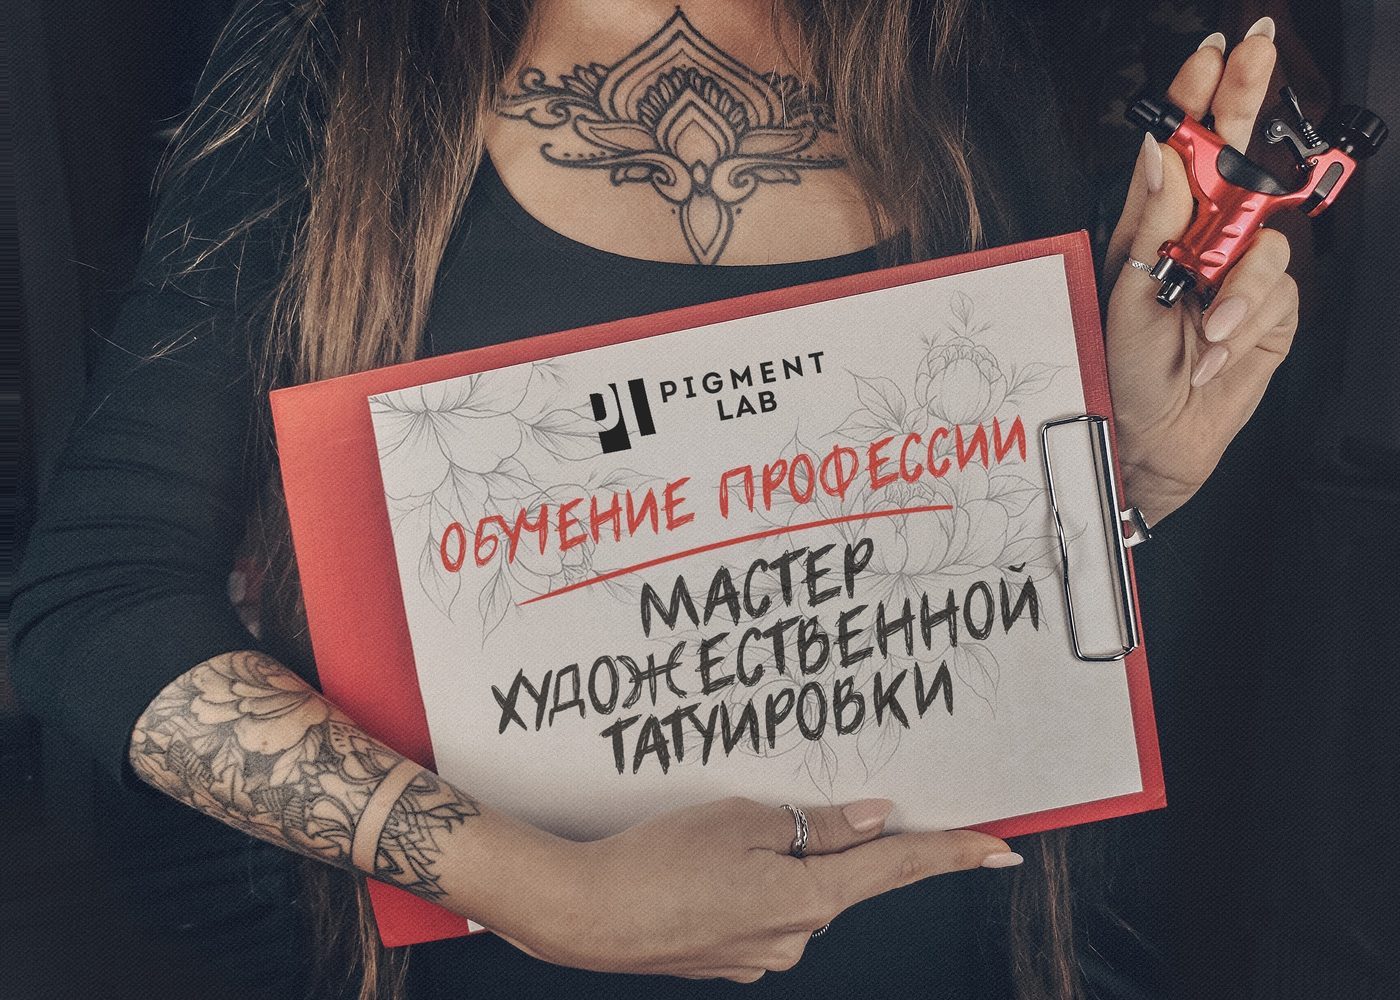 Видео уроки татуировки для начинающих на русском языке